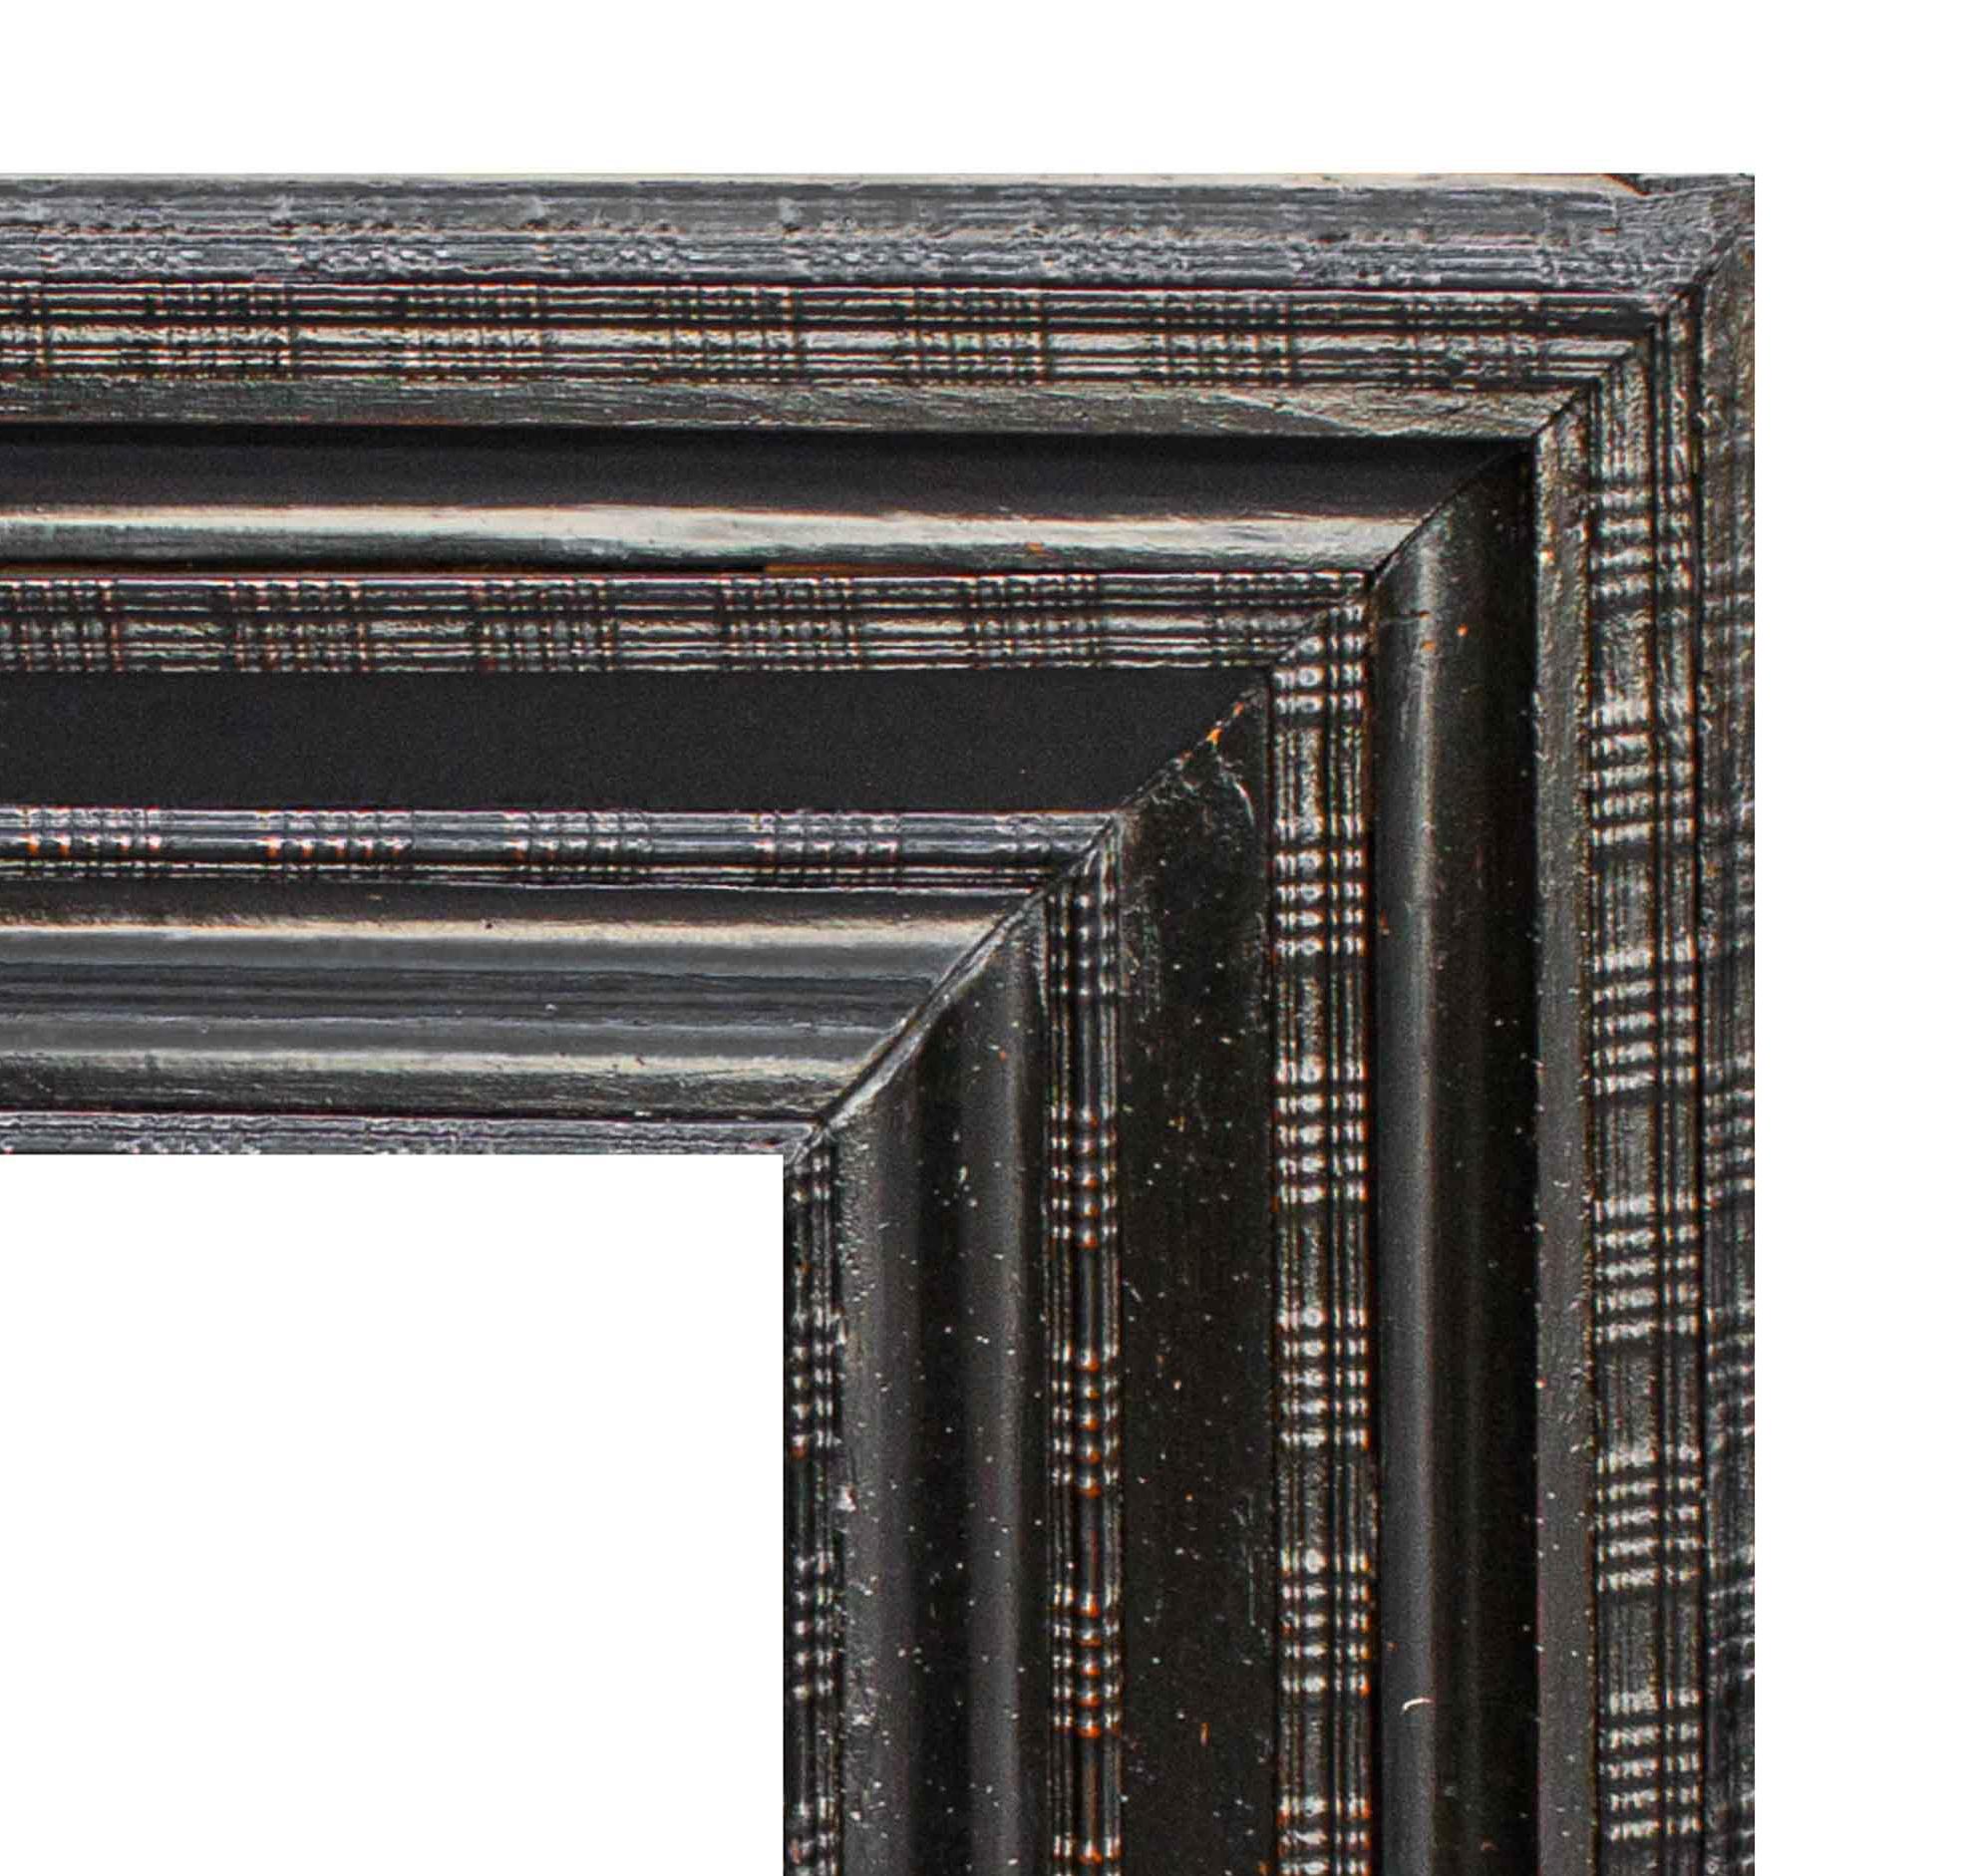 17ème siècle
Cadre guilloché en finition ébonisée
Bois, cm 89 x 79

Datant du XVIIe siècle, le cadre ébonisé examiné présente une sculpture appelée guillochage, dont le bandeau ressemble à une succession de gorges lisses alternant avec des